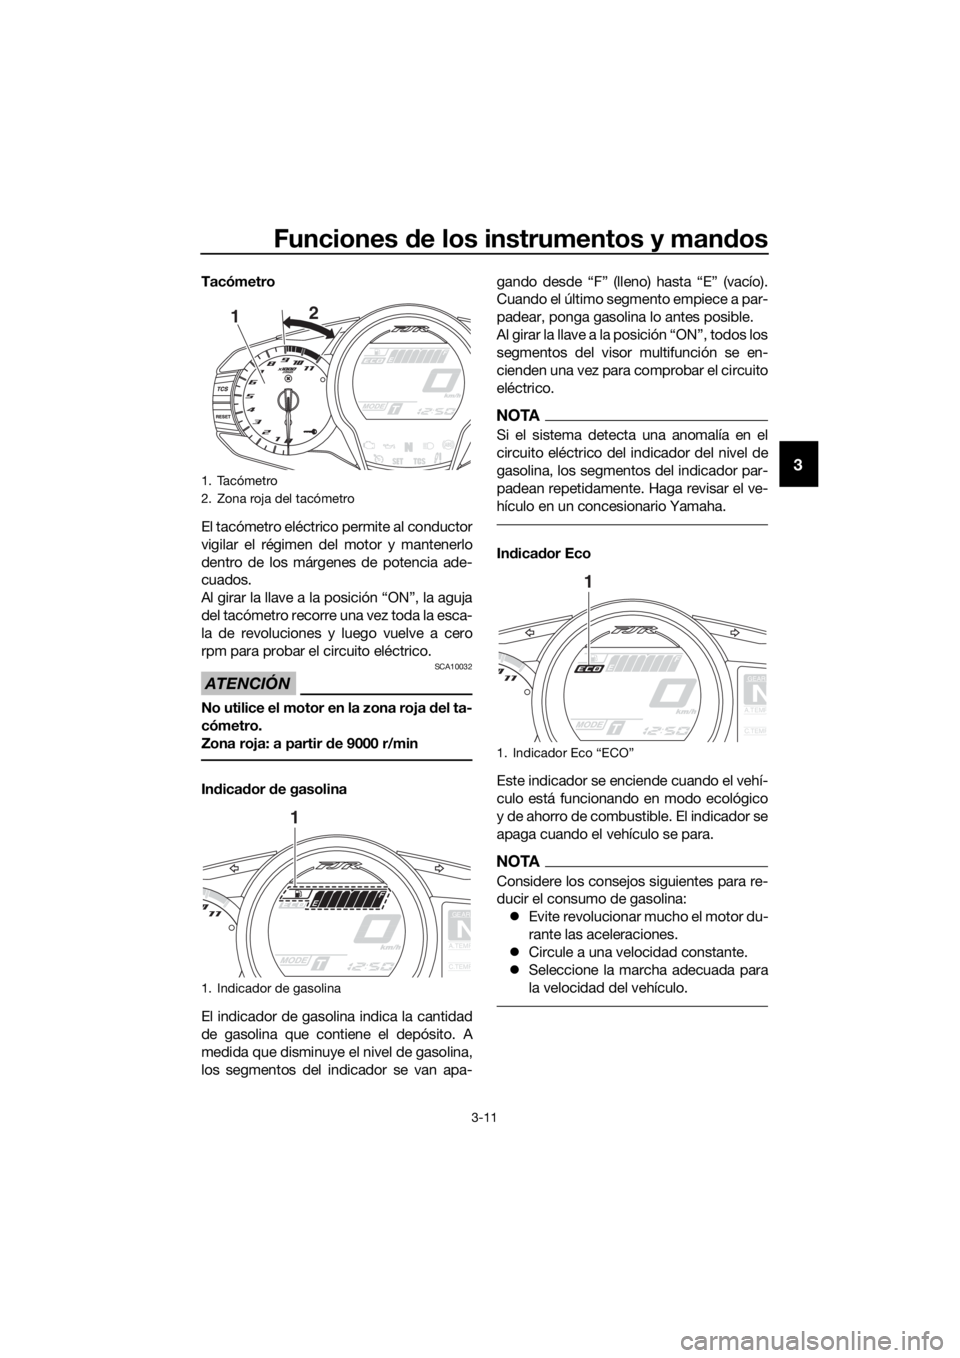 YAMAHA FJR1300AE 2016  Manuale de Empleo (in Spanish) Funciones de los instrumentos y man dos
3-11
3
Tacómetro
El tacómetro eléctrico permite al conductor
vigilar el régimen del motor y mantenerlo
dentro de los márgenes de potencia ade-
cuados.
Al g